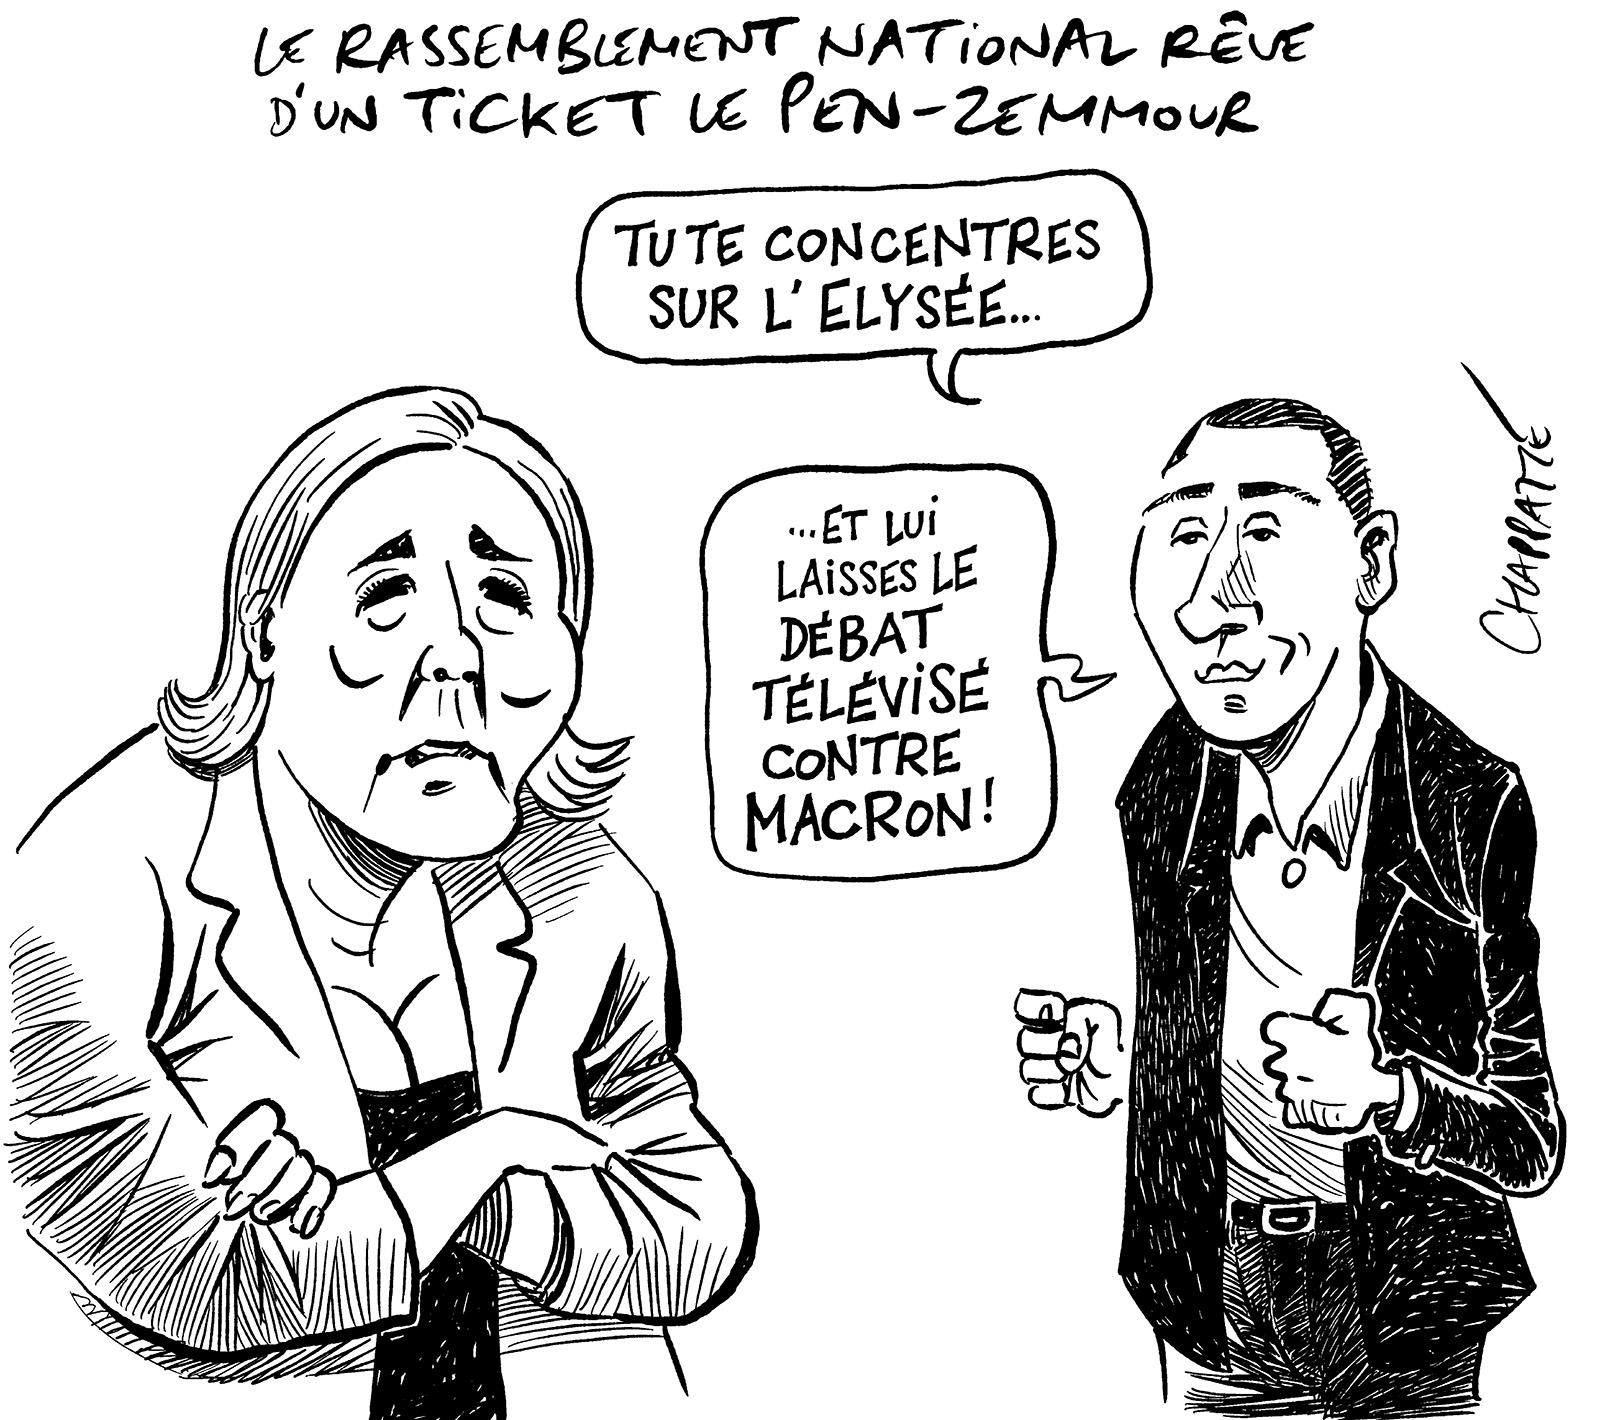 Le RN rêve d’un ticket Le Pen-Zemmour